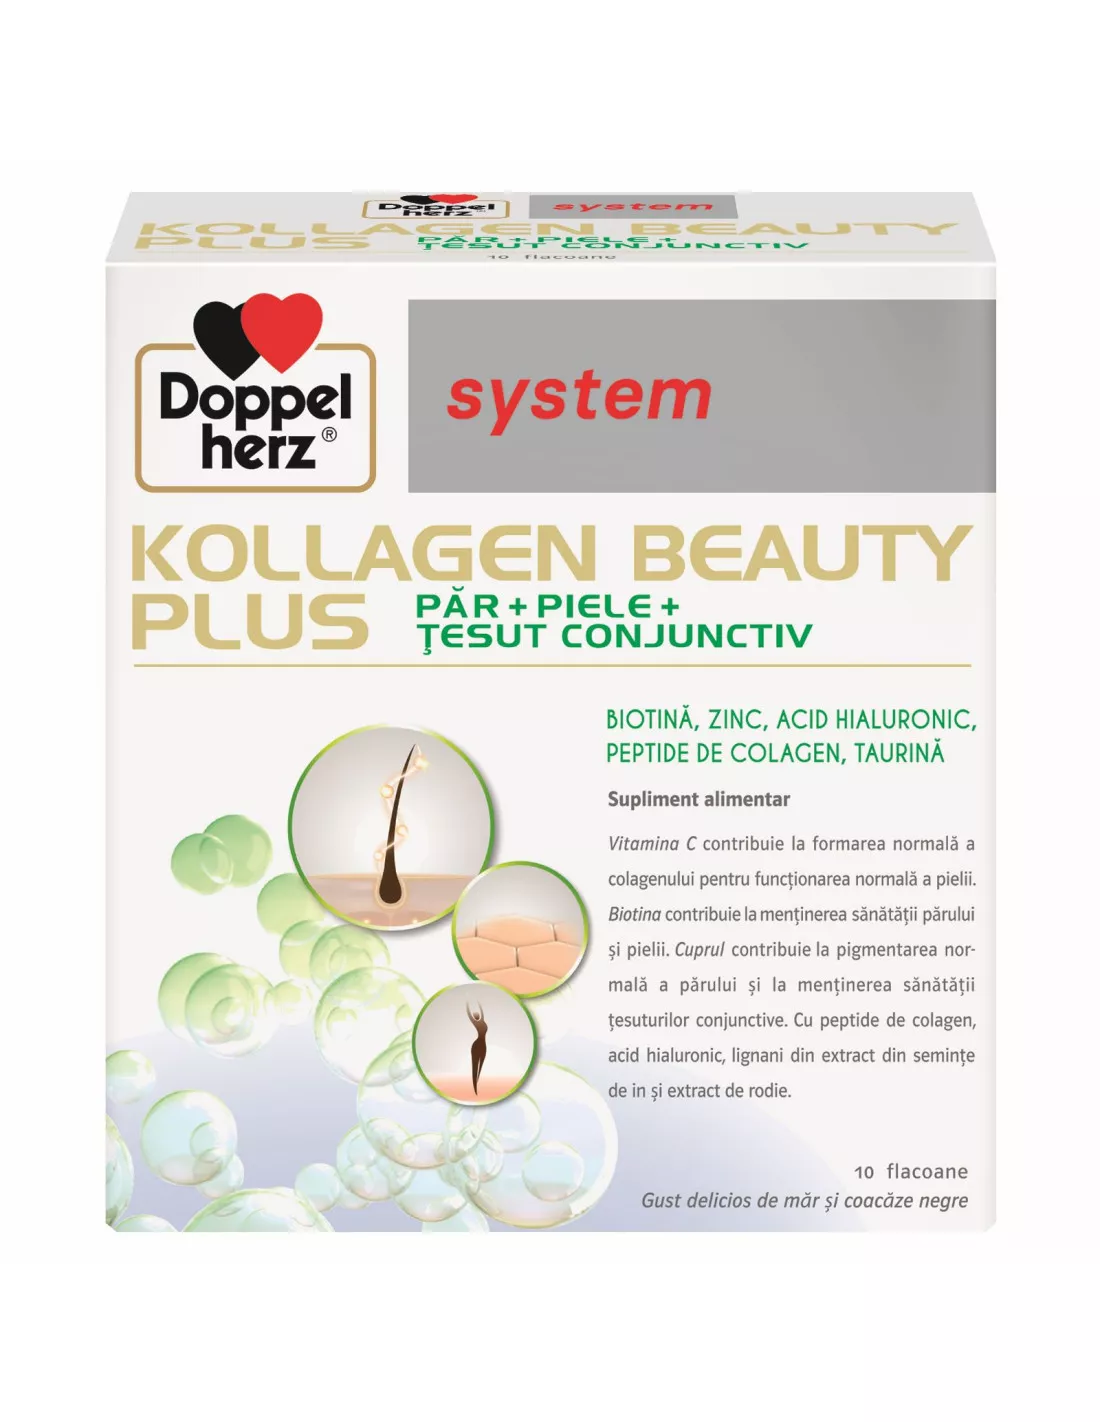 System Kollagen Beauty Plus 25 ml, 10 flacoane, Doppelherz , [],nordpharm.ro